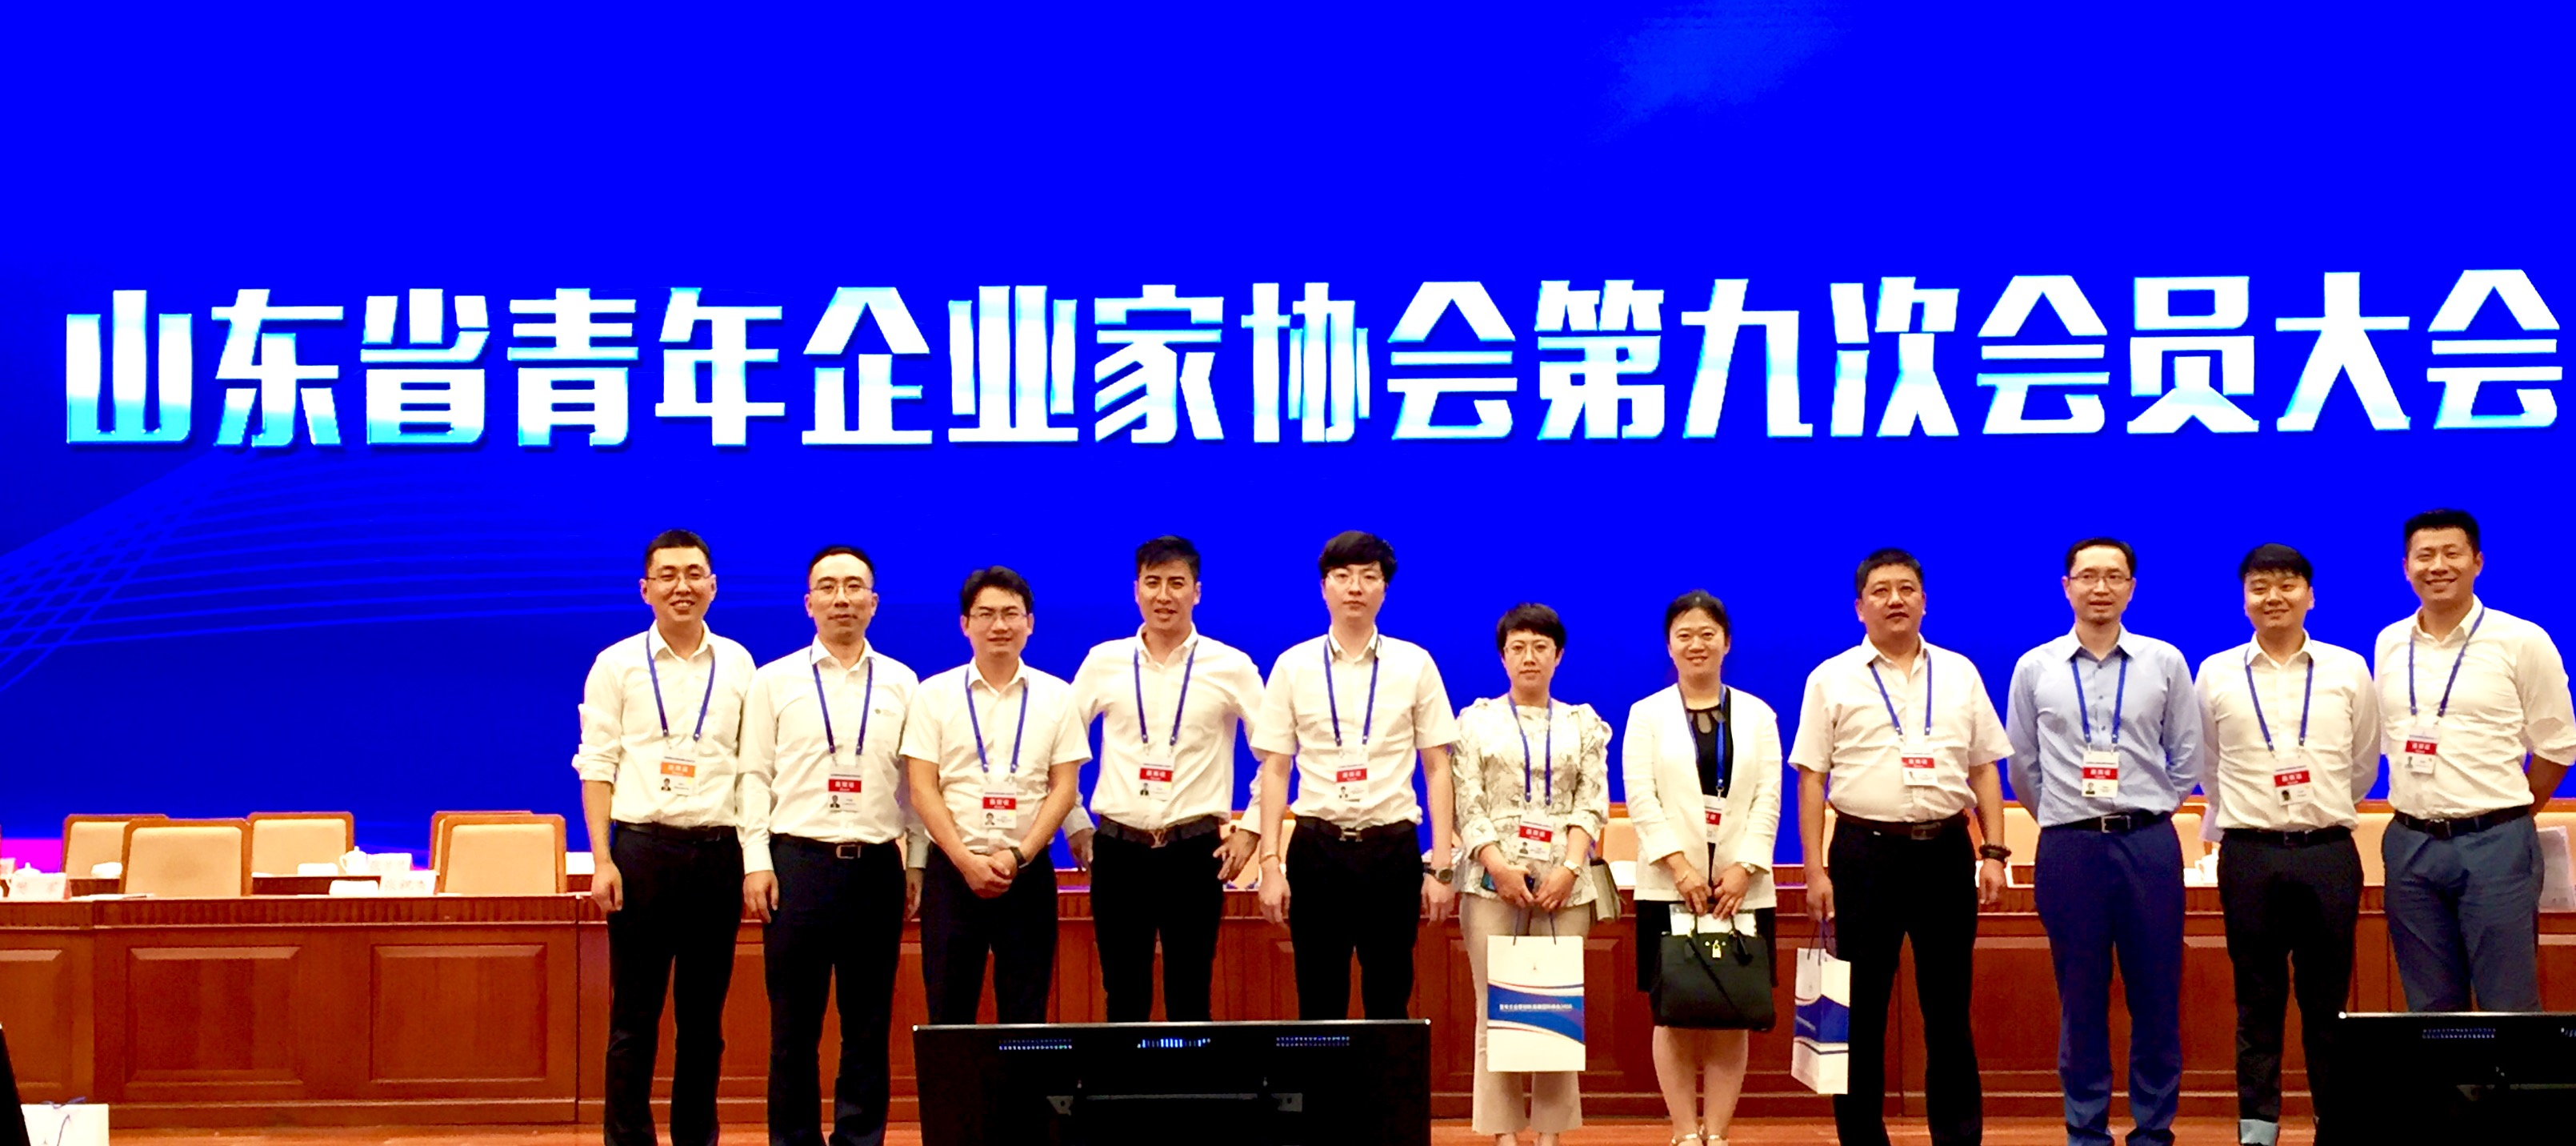 晨源分子總經理李武松博士受邀出席山東省青年企業家協會第九次會員大會